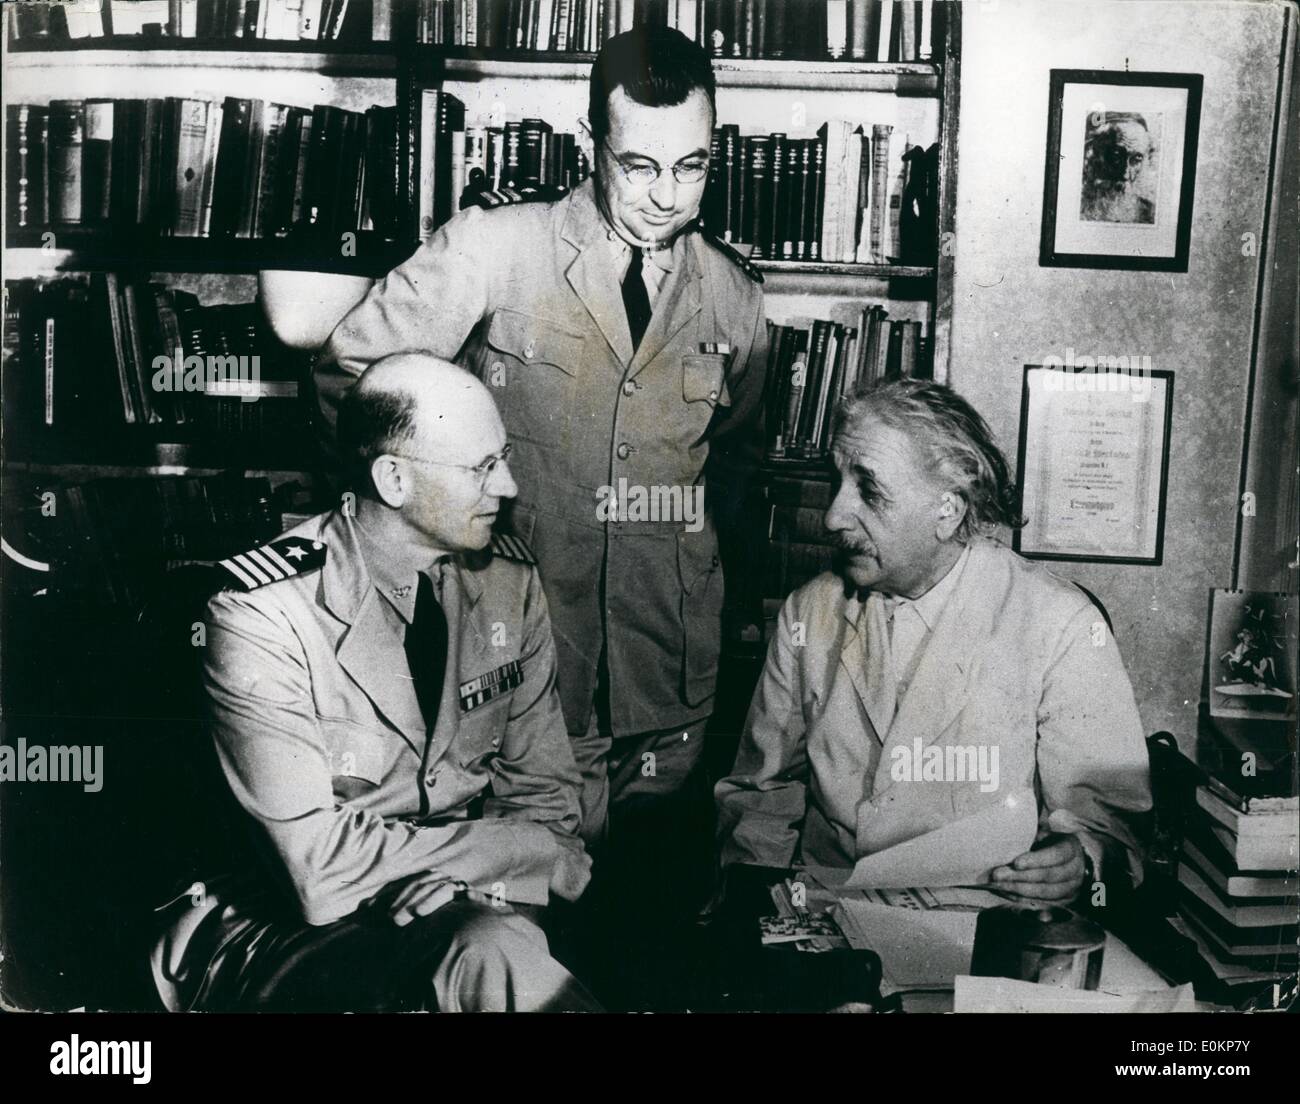 Ottobre 10, 1943 - scienziato Falcous adesso lavora per lo zio sa passato dal censore: Dott. Albert Einstein., tedesco in materia di rifugiati e di uno dei più famosi al mondo gli scienziati, fondatore della teoria della relatività o, è ora rifiuta il lavoro di ricerca per la marina militare statunitense. La foto mostra l a r Captain G.E.Salvia, U.S.N. comandante della U.S. Naval Training School a Princeton, N.J. e il tenente comandante F.L.Douthit, Usher, delegato della scuola, pagare una visita al famoso scienziato, prof.Einstein, nel suo studio presso l'università di Princeton. Foto Stock